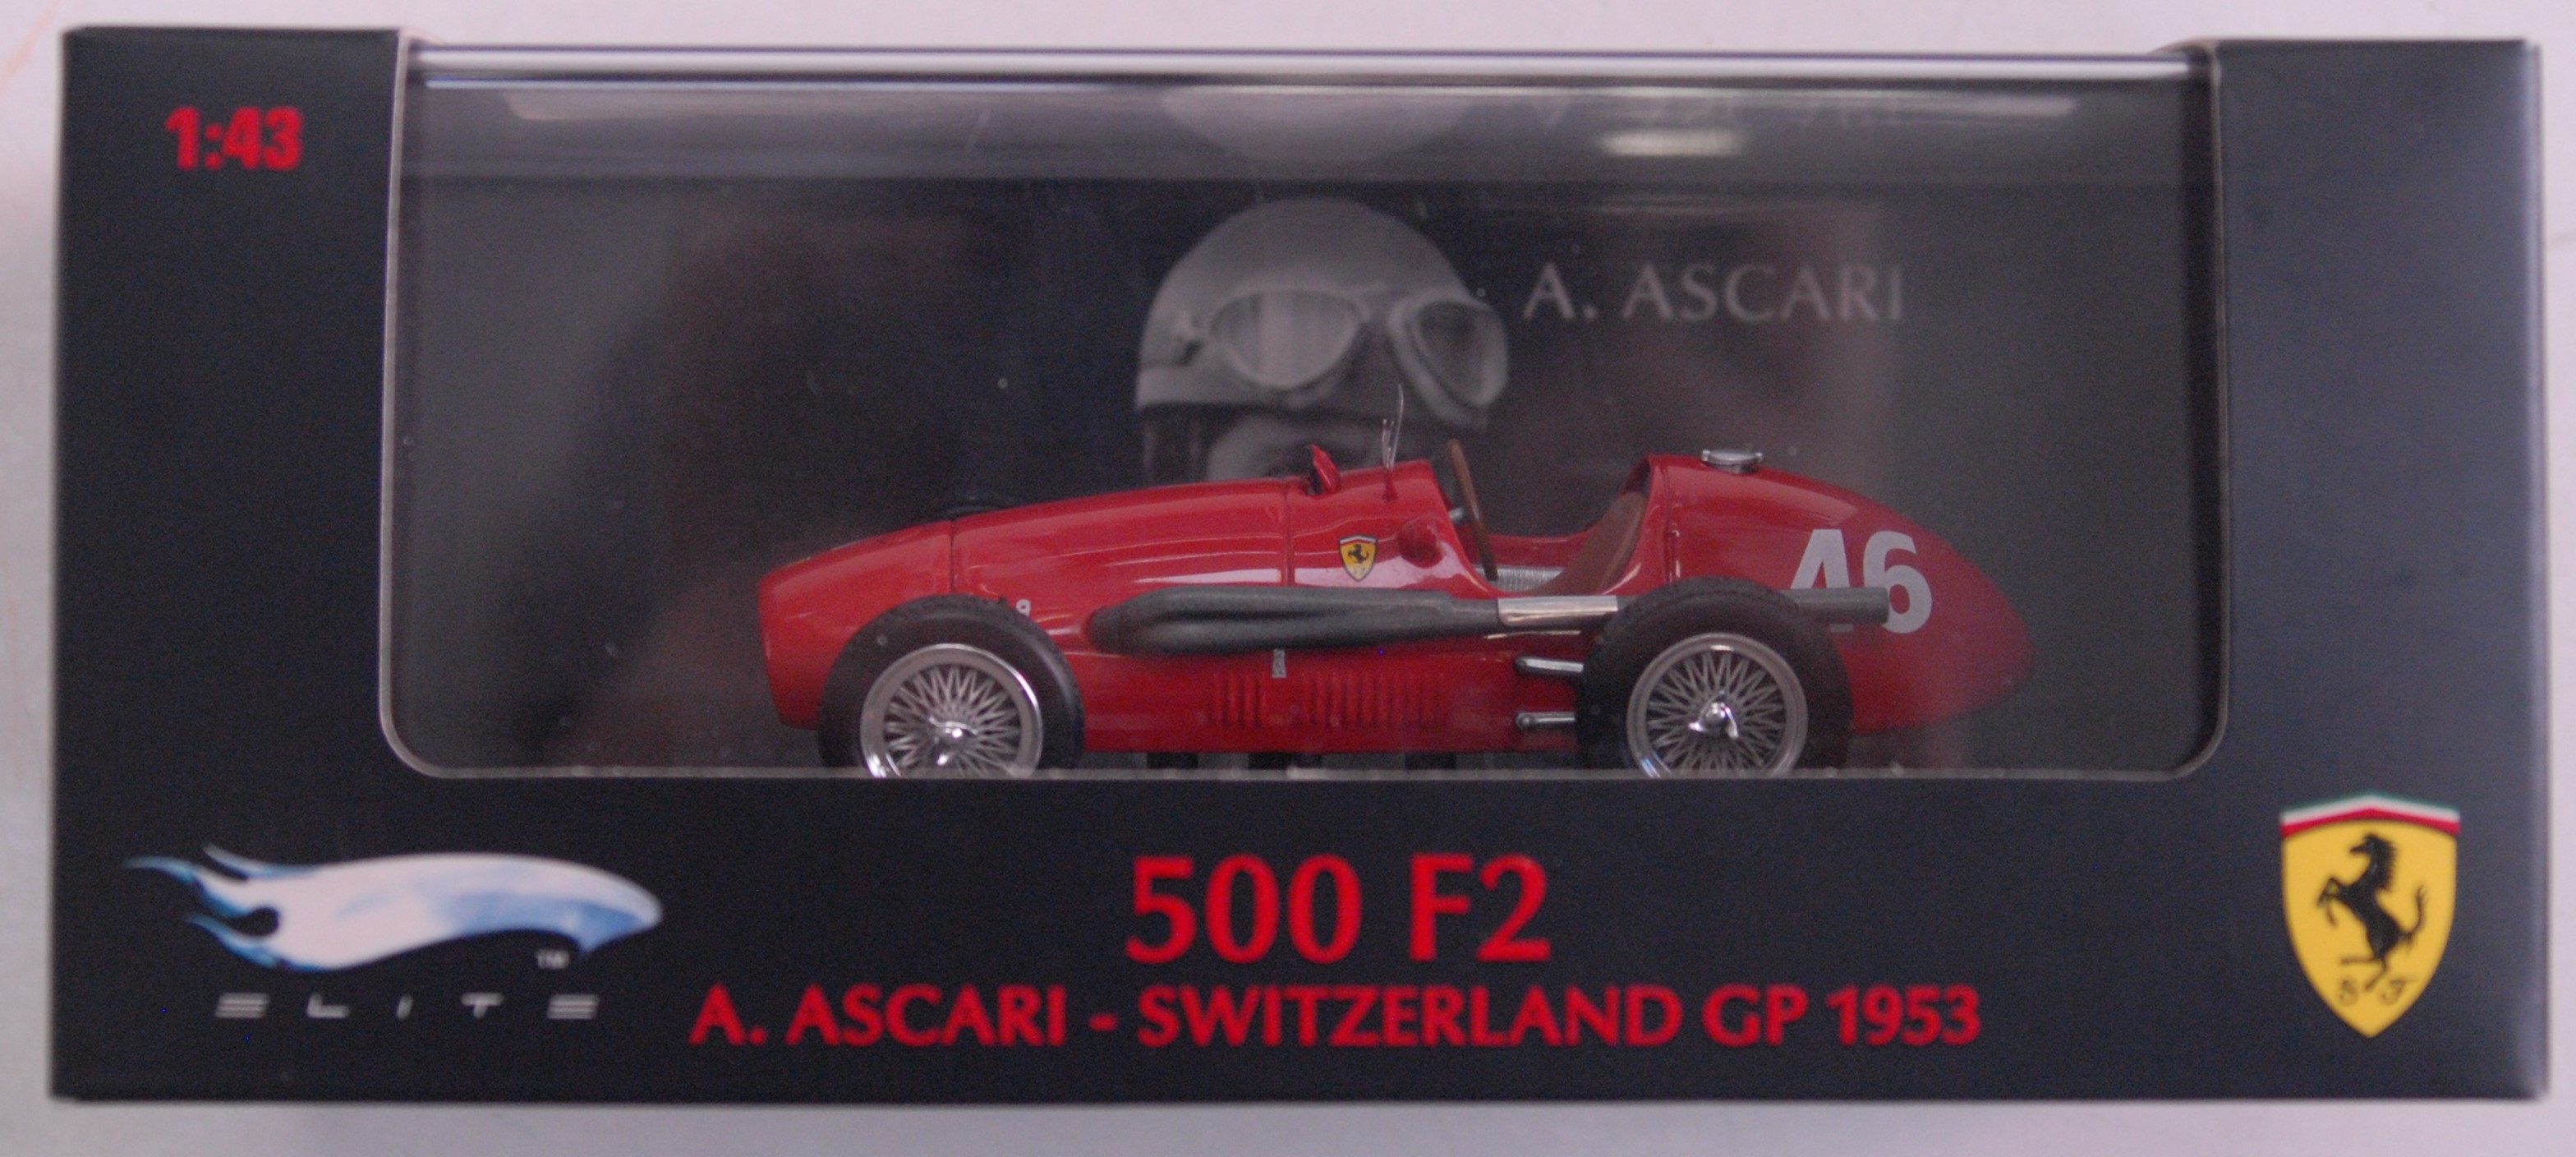 Ferrari 500 F2 A. Ascari Svizzera 1953